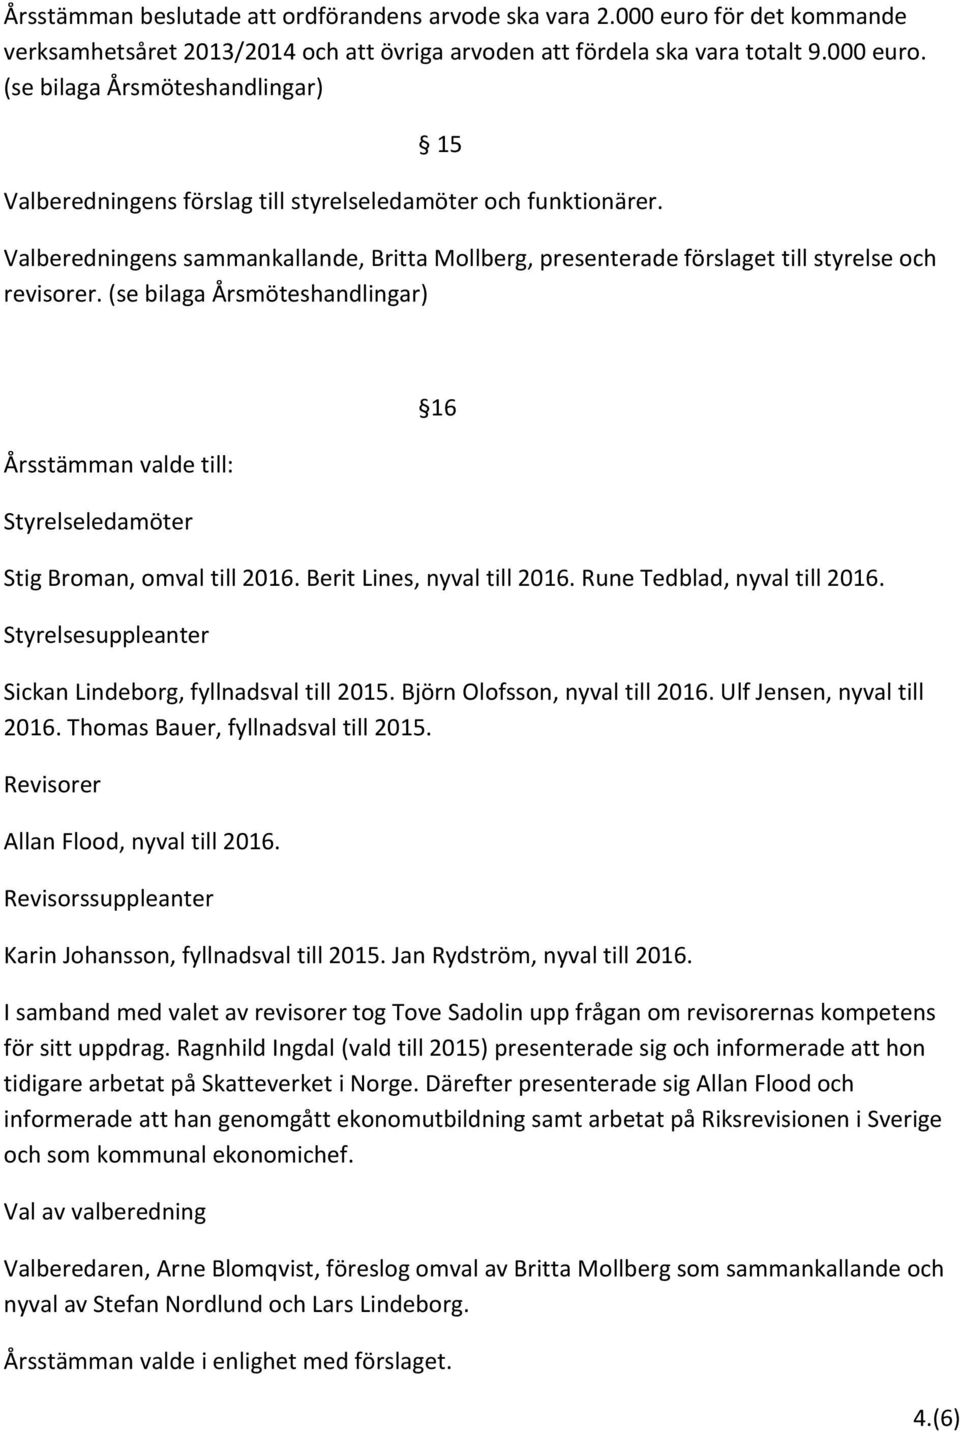 (se bilaga Årsmöteshandlingar) Årsstämman valde till: Styrelseledamöter 16 Stig Broman, omval till 2016. Berit Lines, nyval till 2016. Rune Tedblad, nyval till 2016.